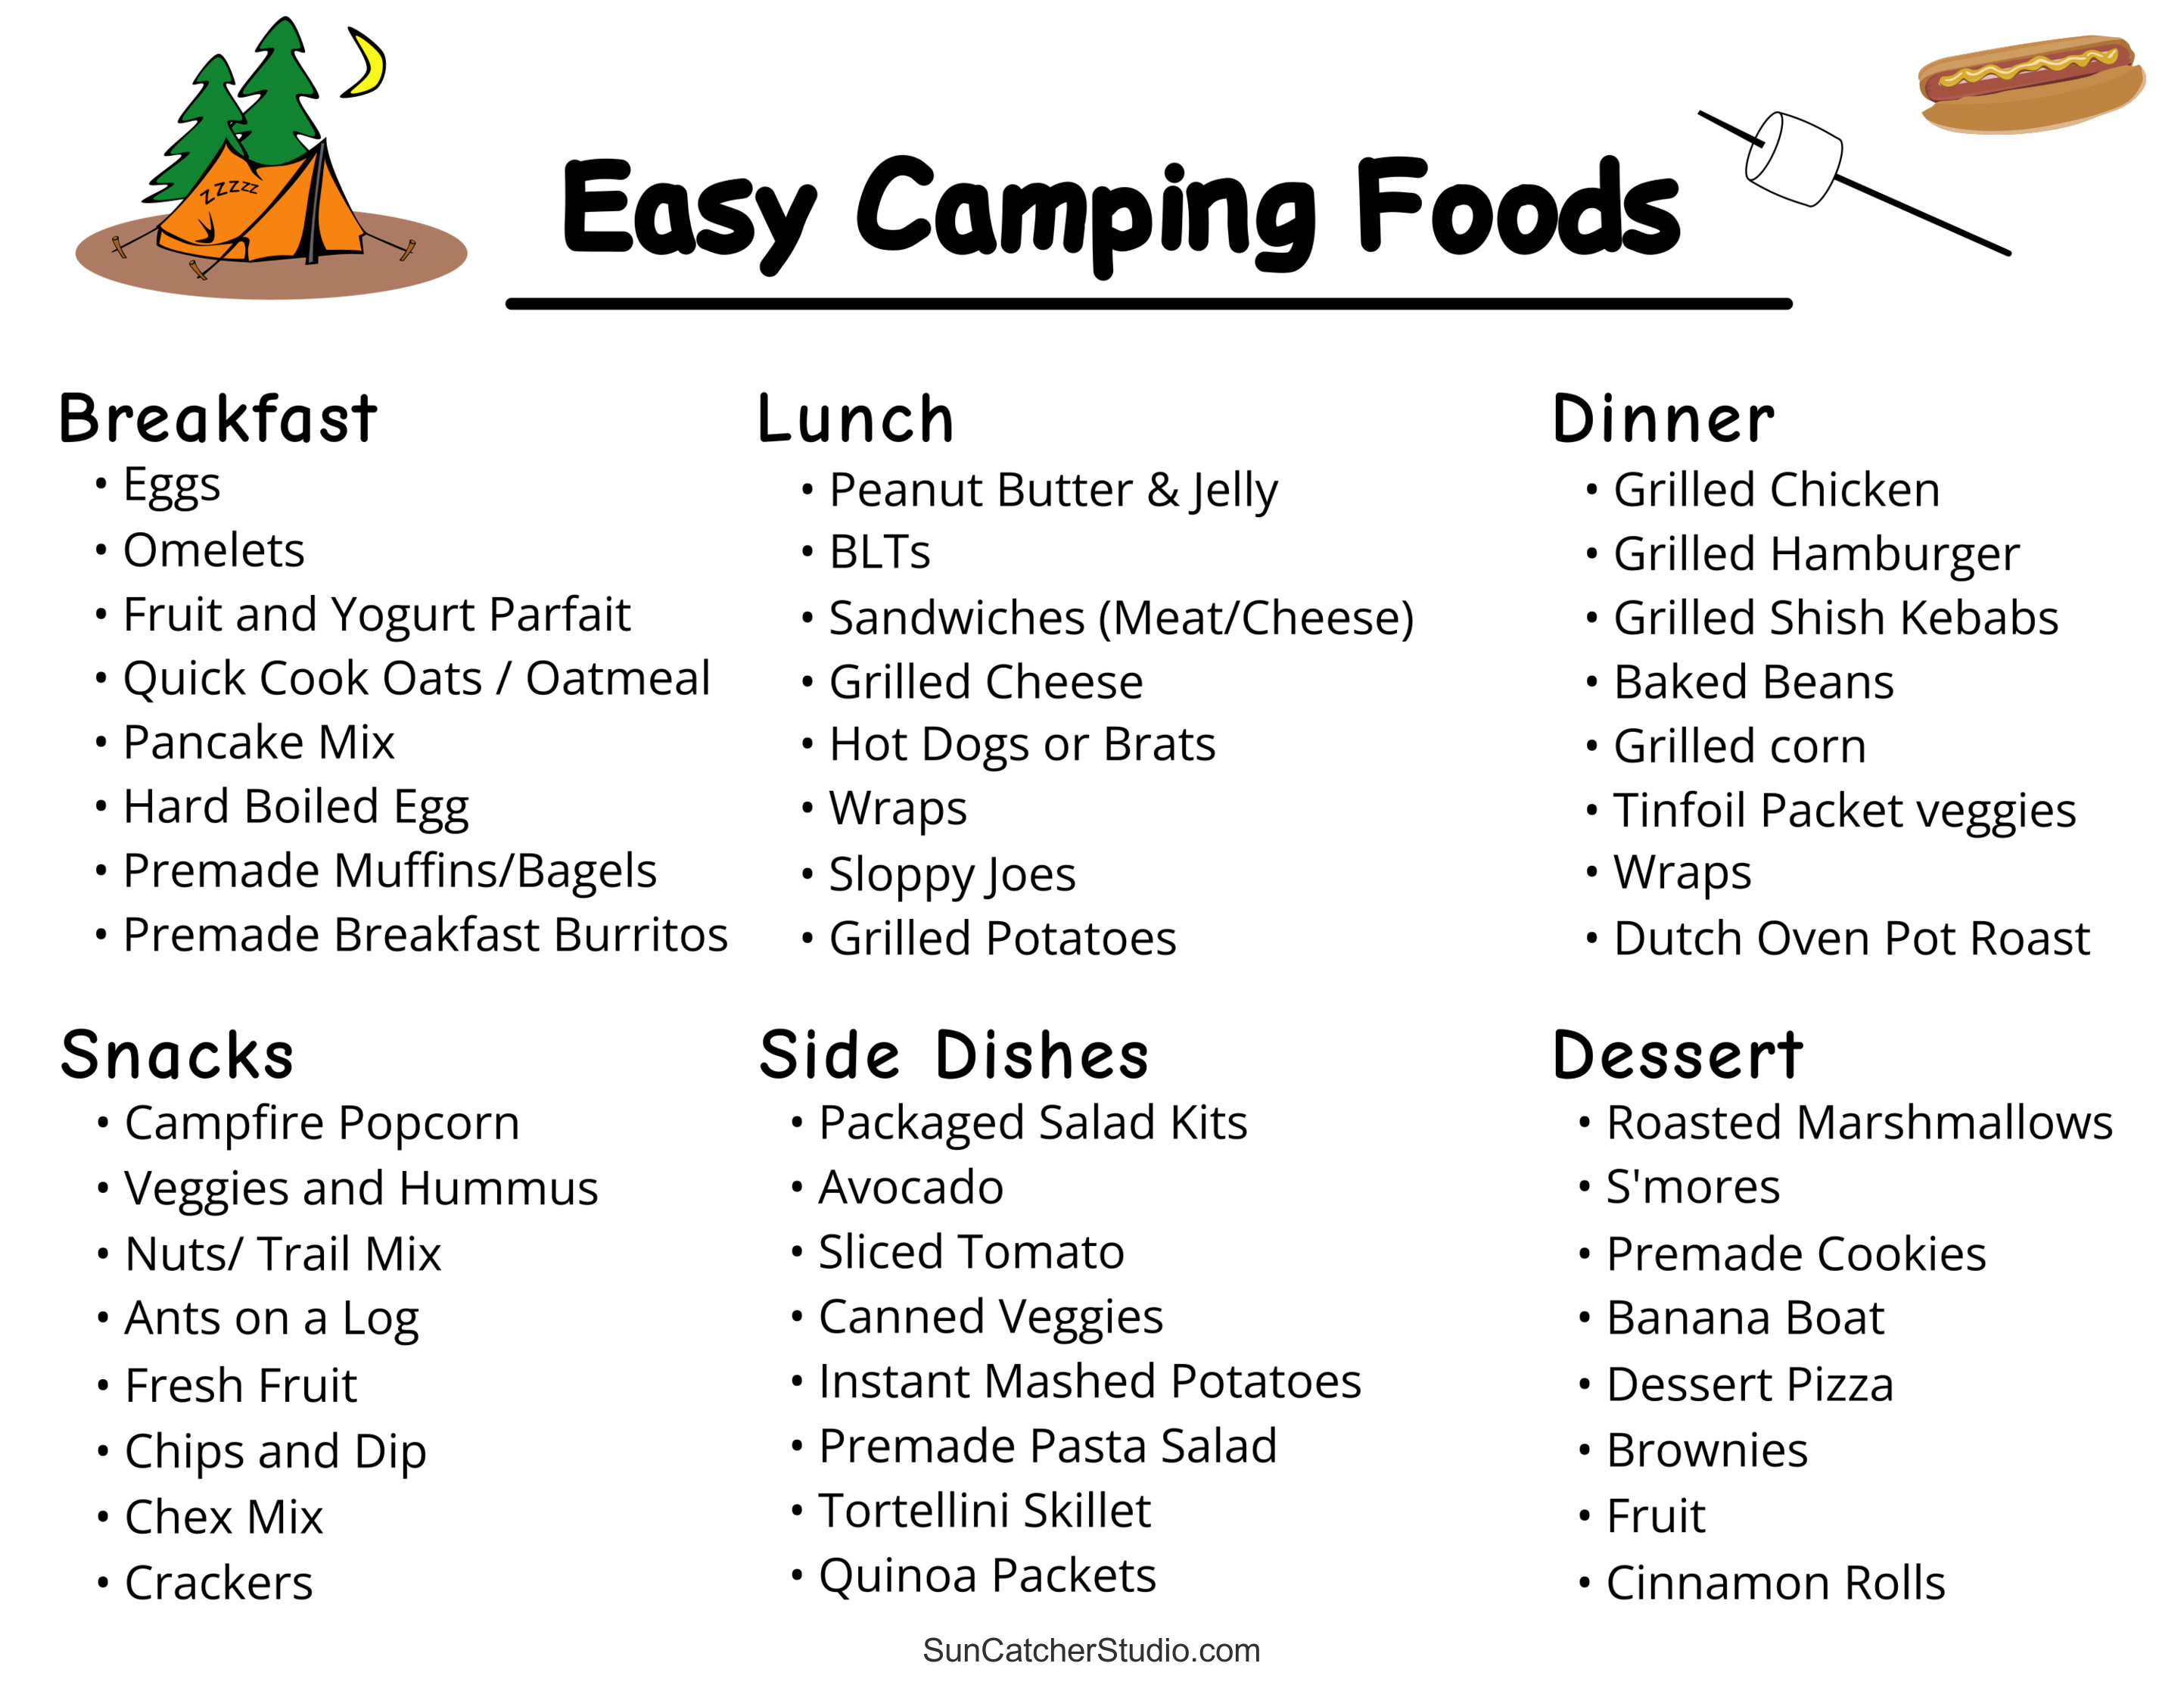 https://suncatcherstudio.com/uploads/printables/camping-checklist/pdf-png/easy-camping-foods-010101-fefefe.png